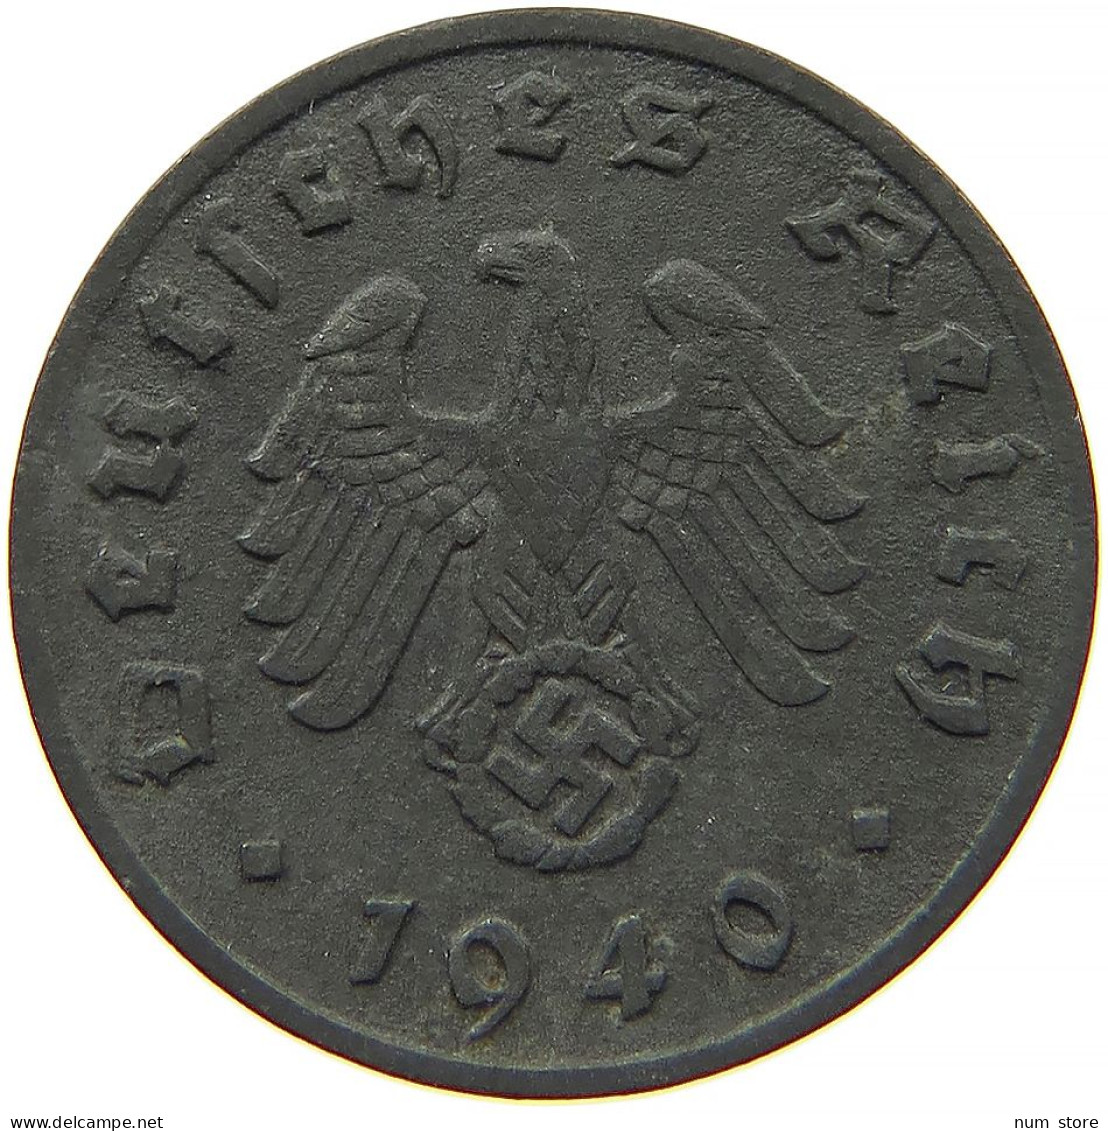 GERMANY 1 REICHSPFENNIG 1940 A #s091 1105 - 1 Reichspfennig